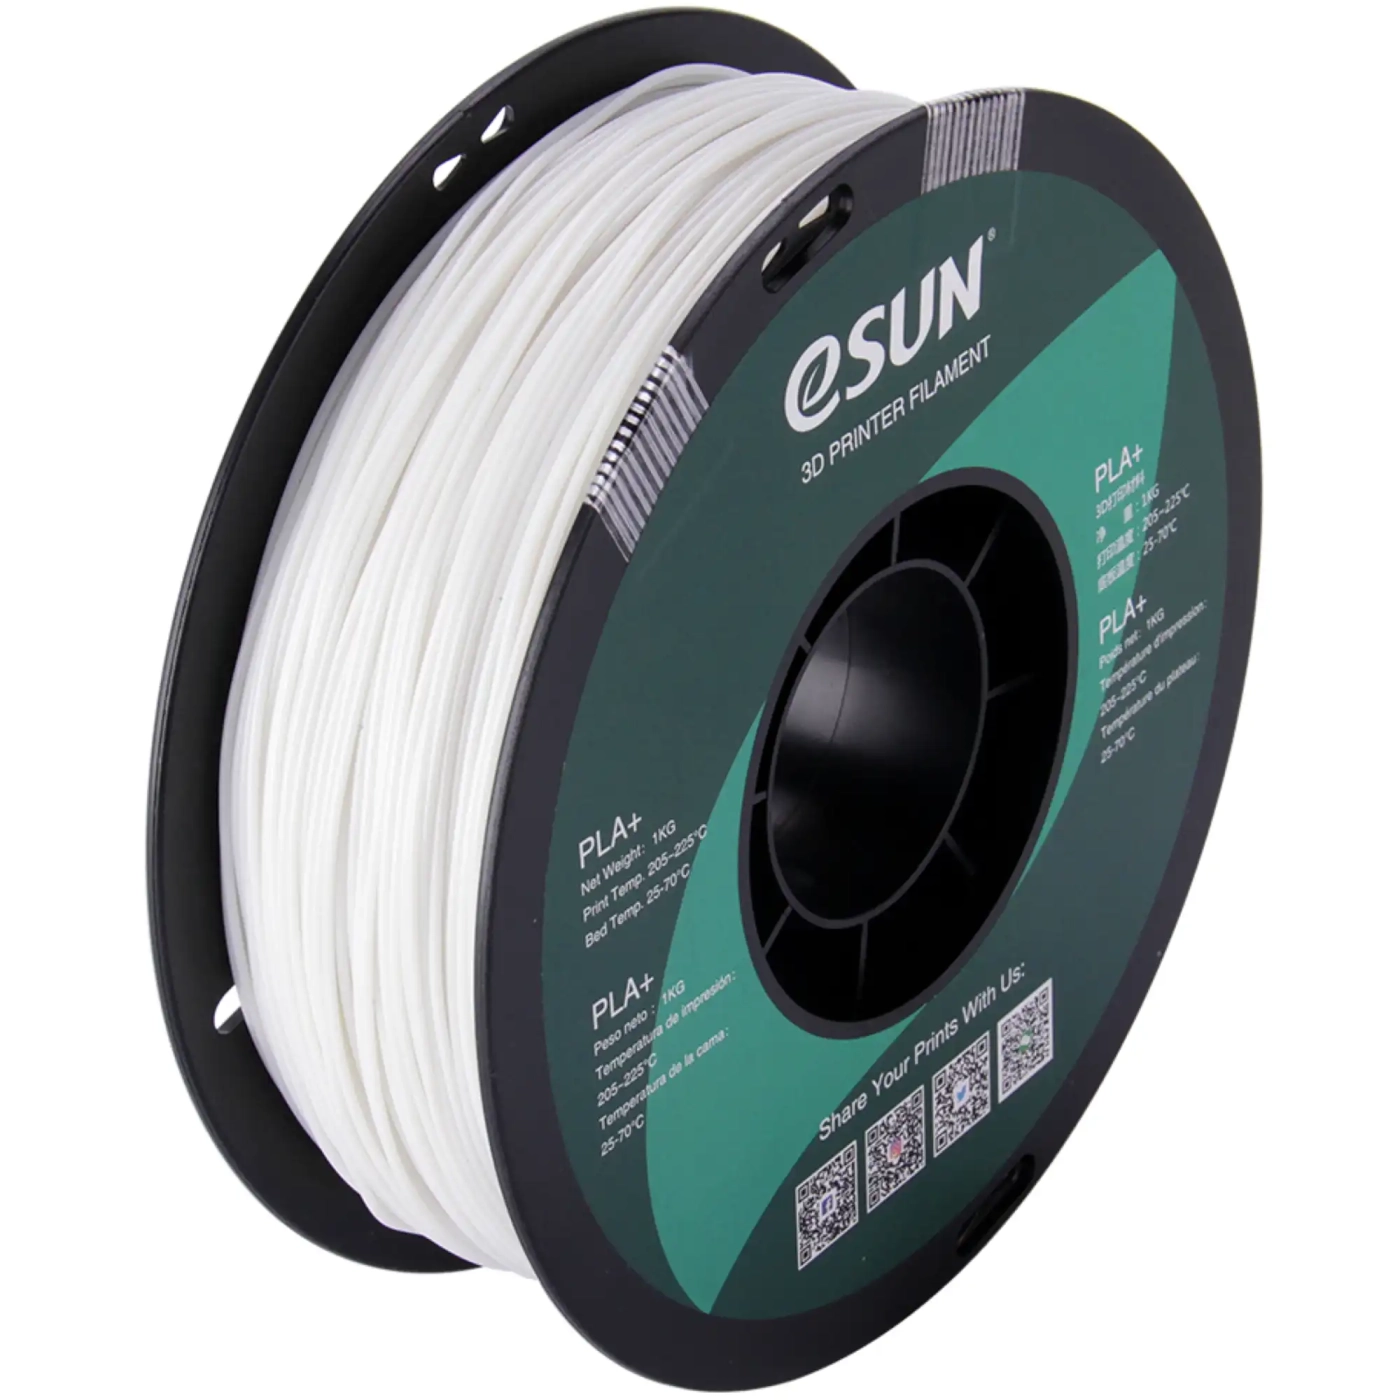 Купить PLA Filament (пластик) для 3D принтера Esun 1кг, 1.75мм, люминесцентный зеленый (PLA-175L1) - фото 1